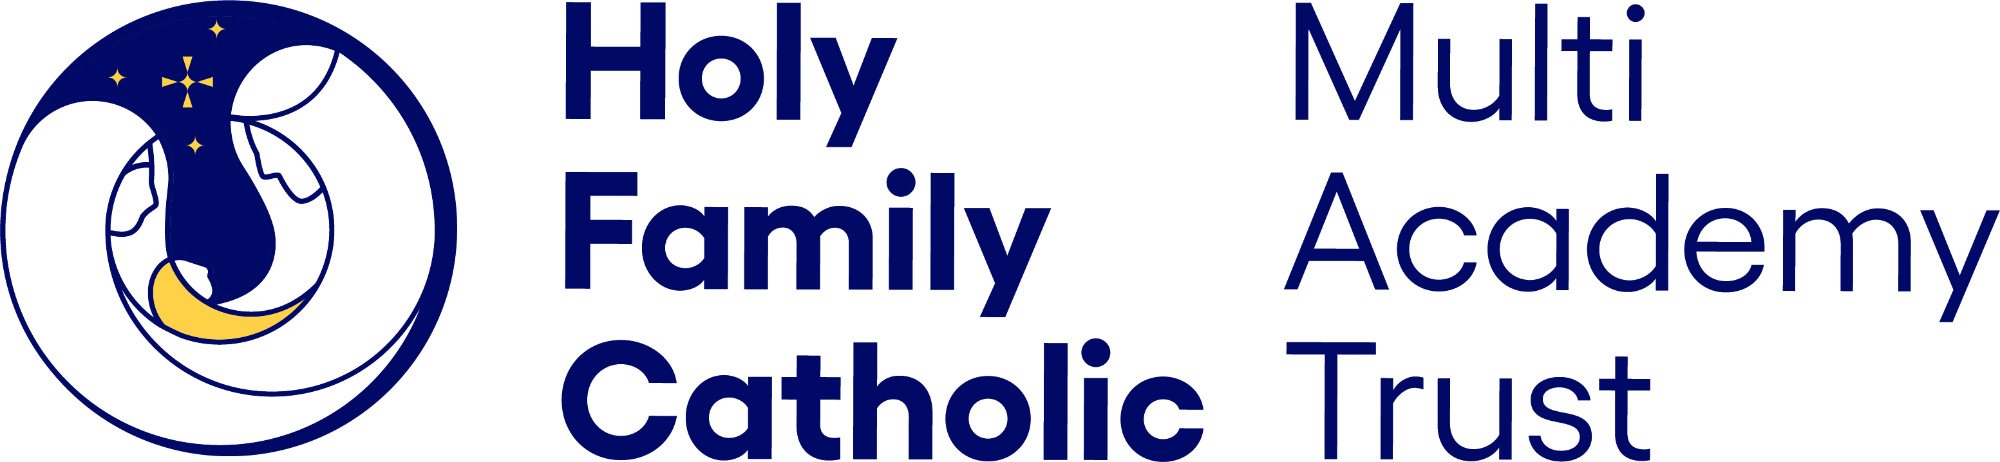 Holy Catholic Multi Academy Trust